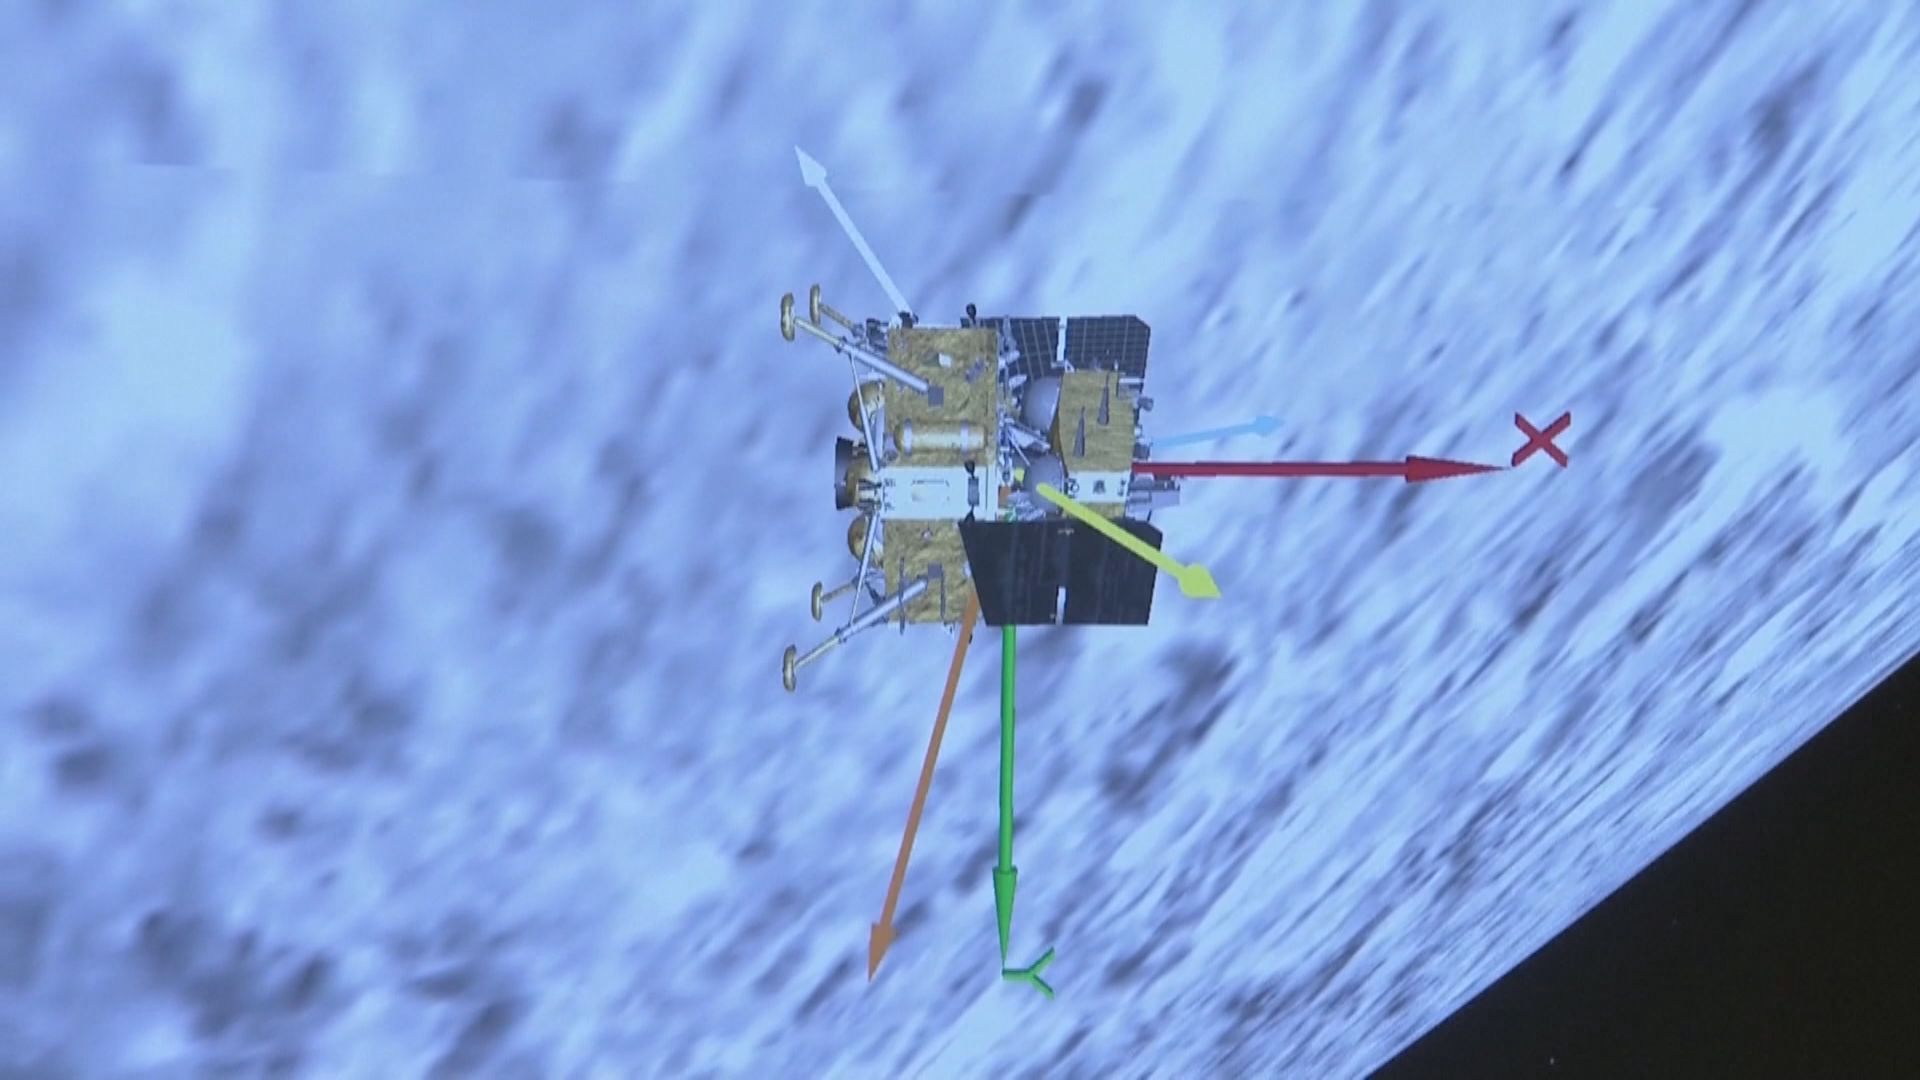 嫦娥六號完成人類史上首次月球背面採樣 全靠獨特裝置技術